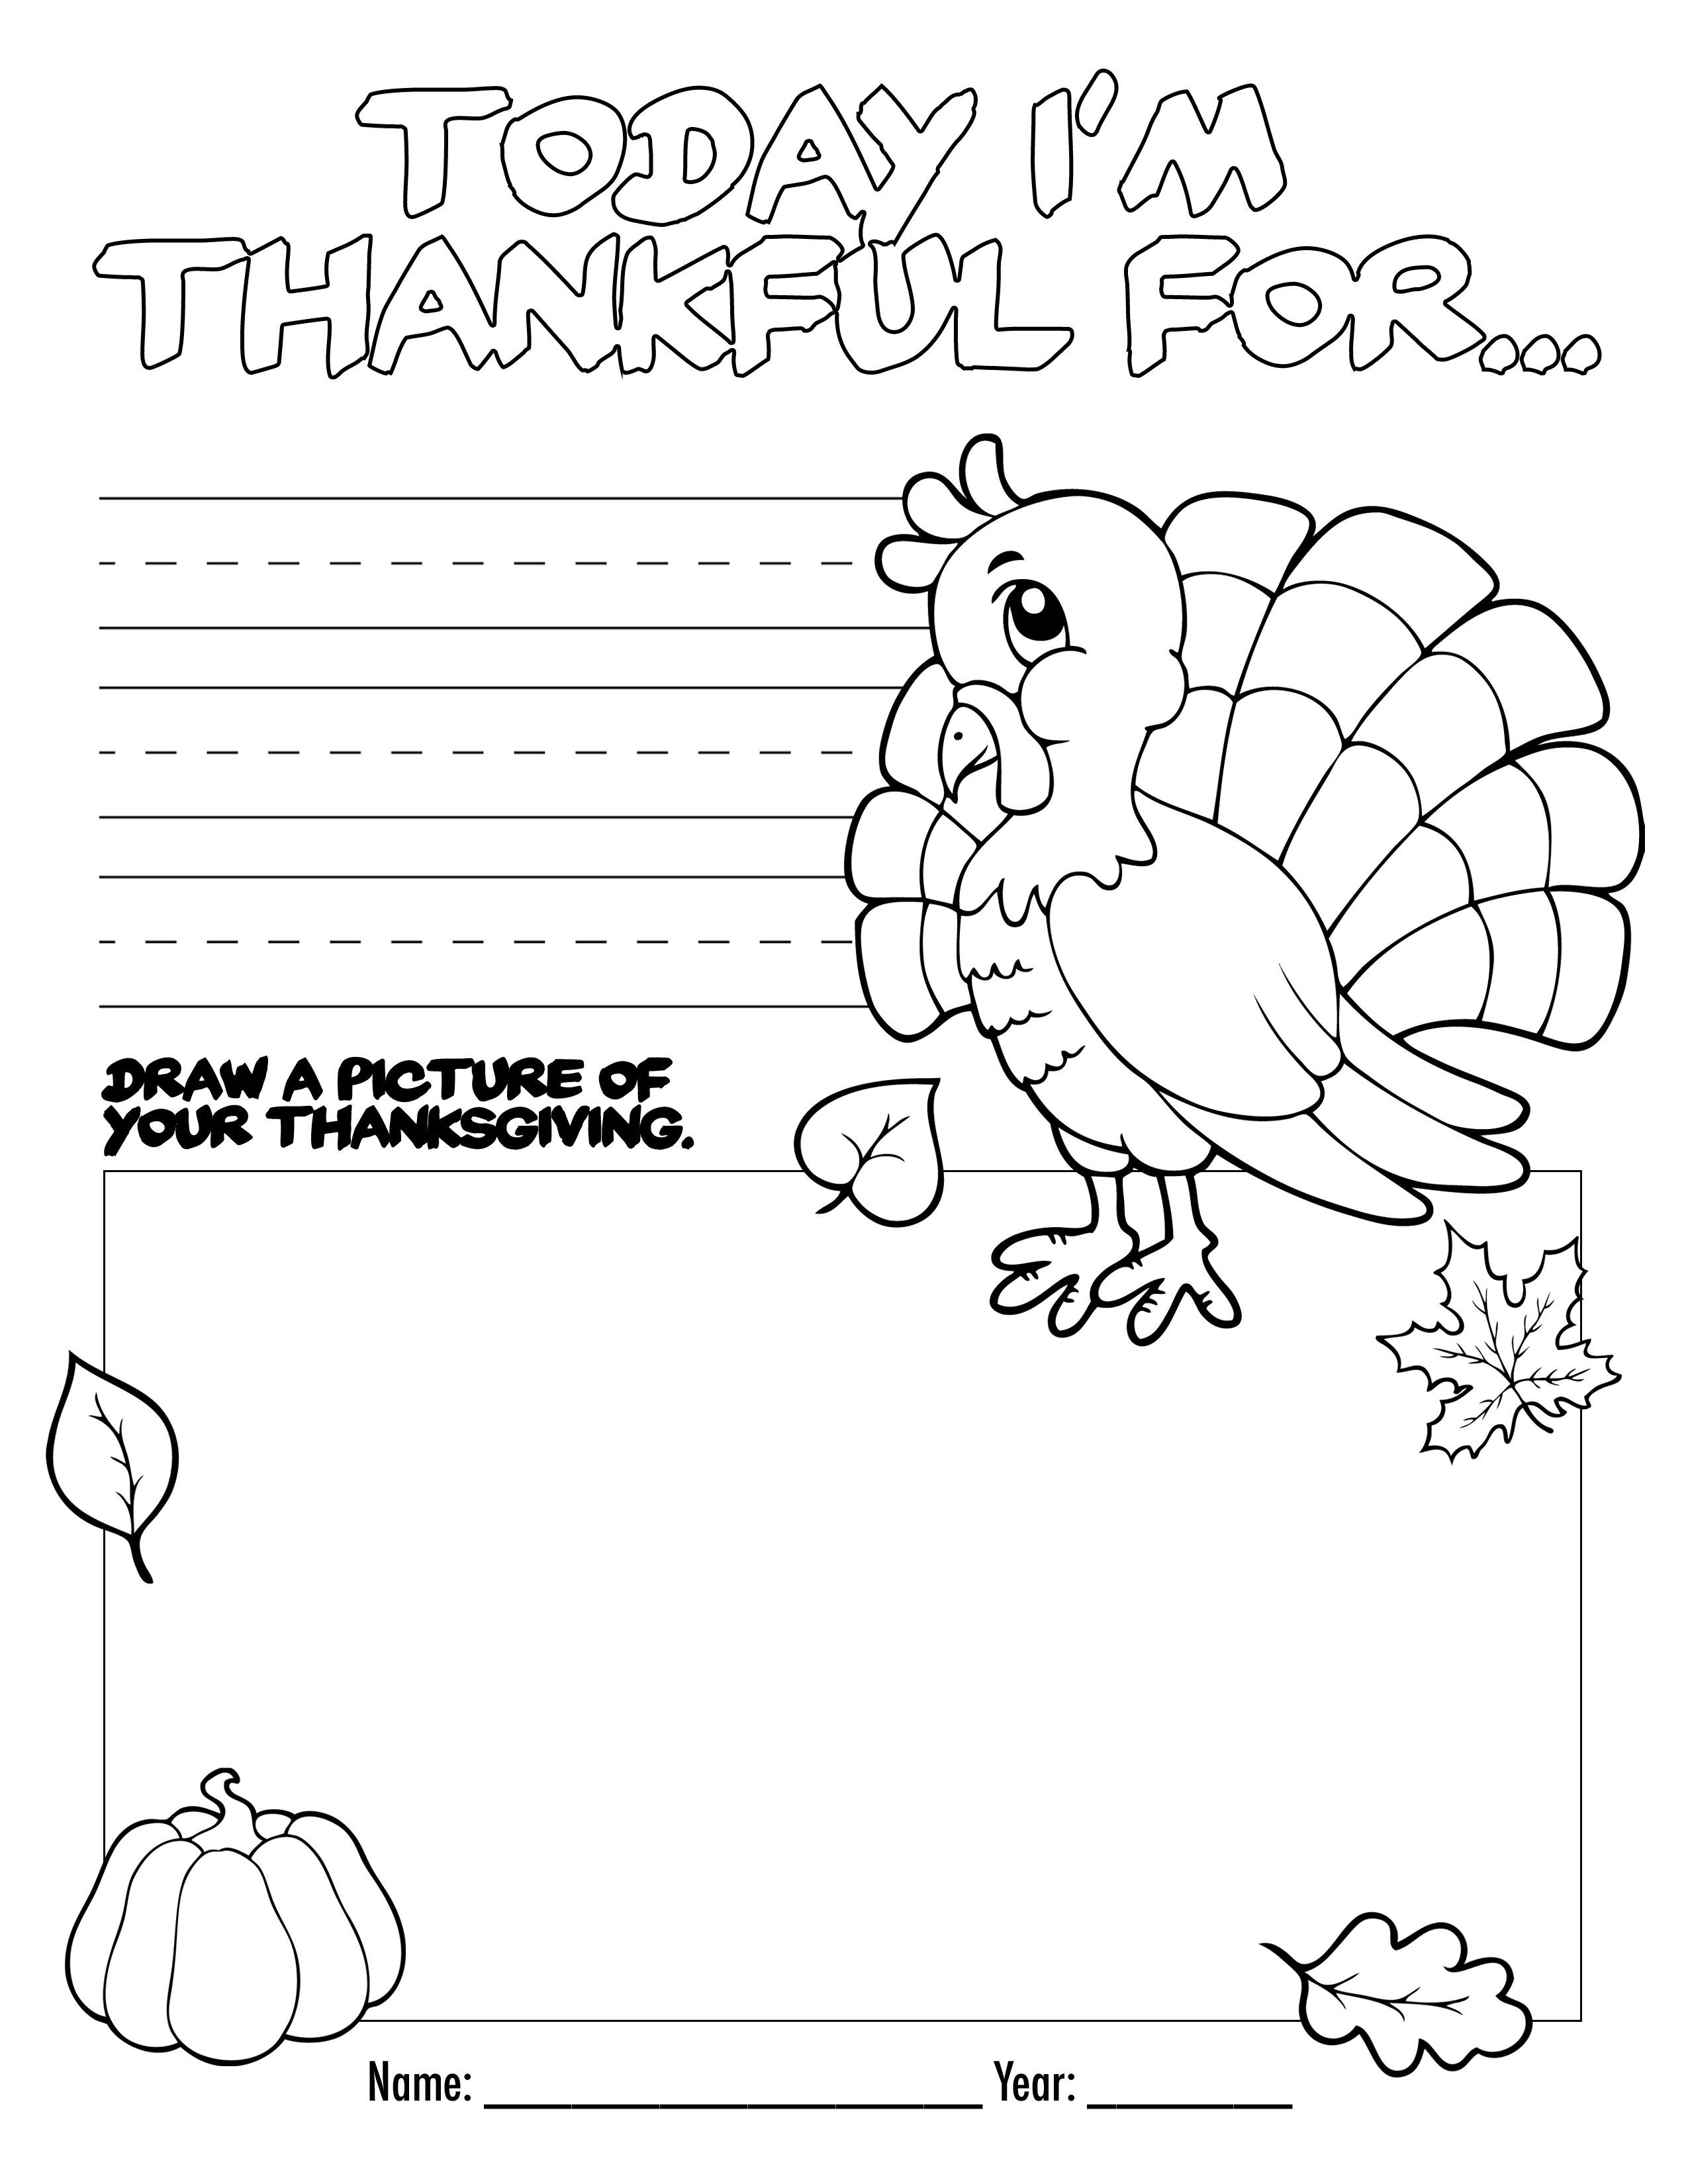 Free Printable Activities For Kindergarten Thanksgiving | Printable - Free Printable Kindergarten Thanksgiving Activities